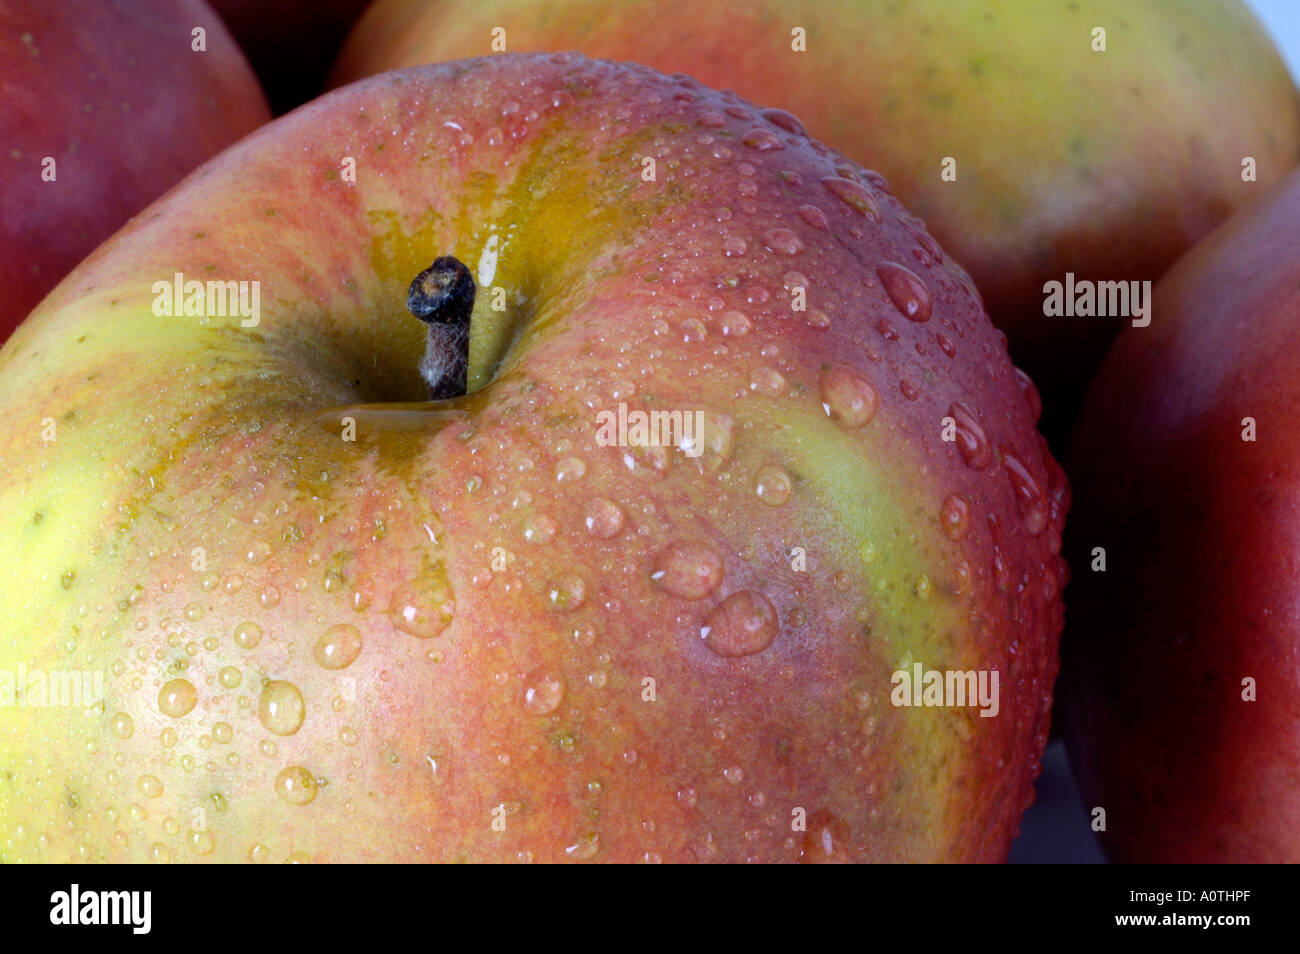 Apple / Berlepsch Stock Photo